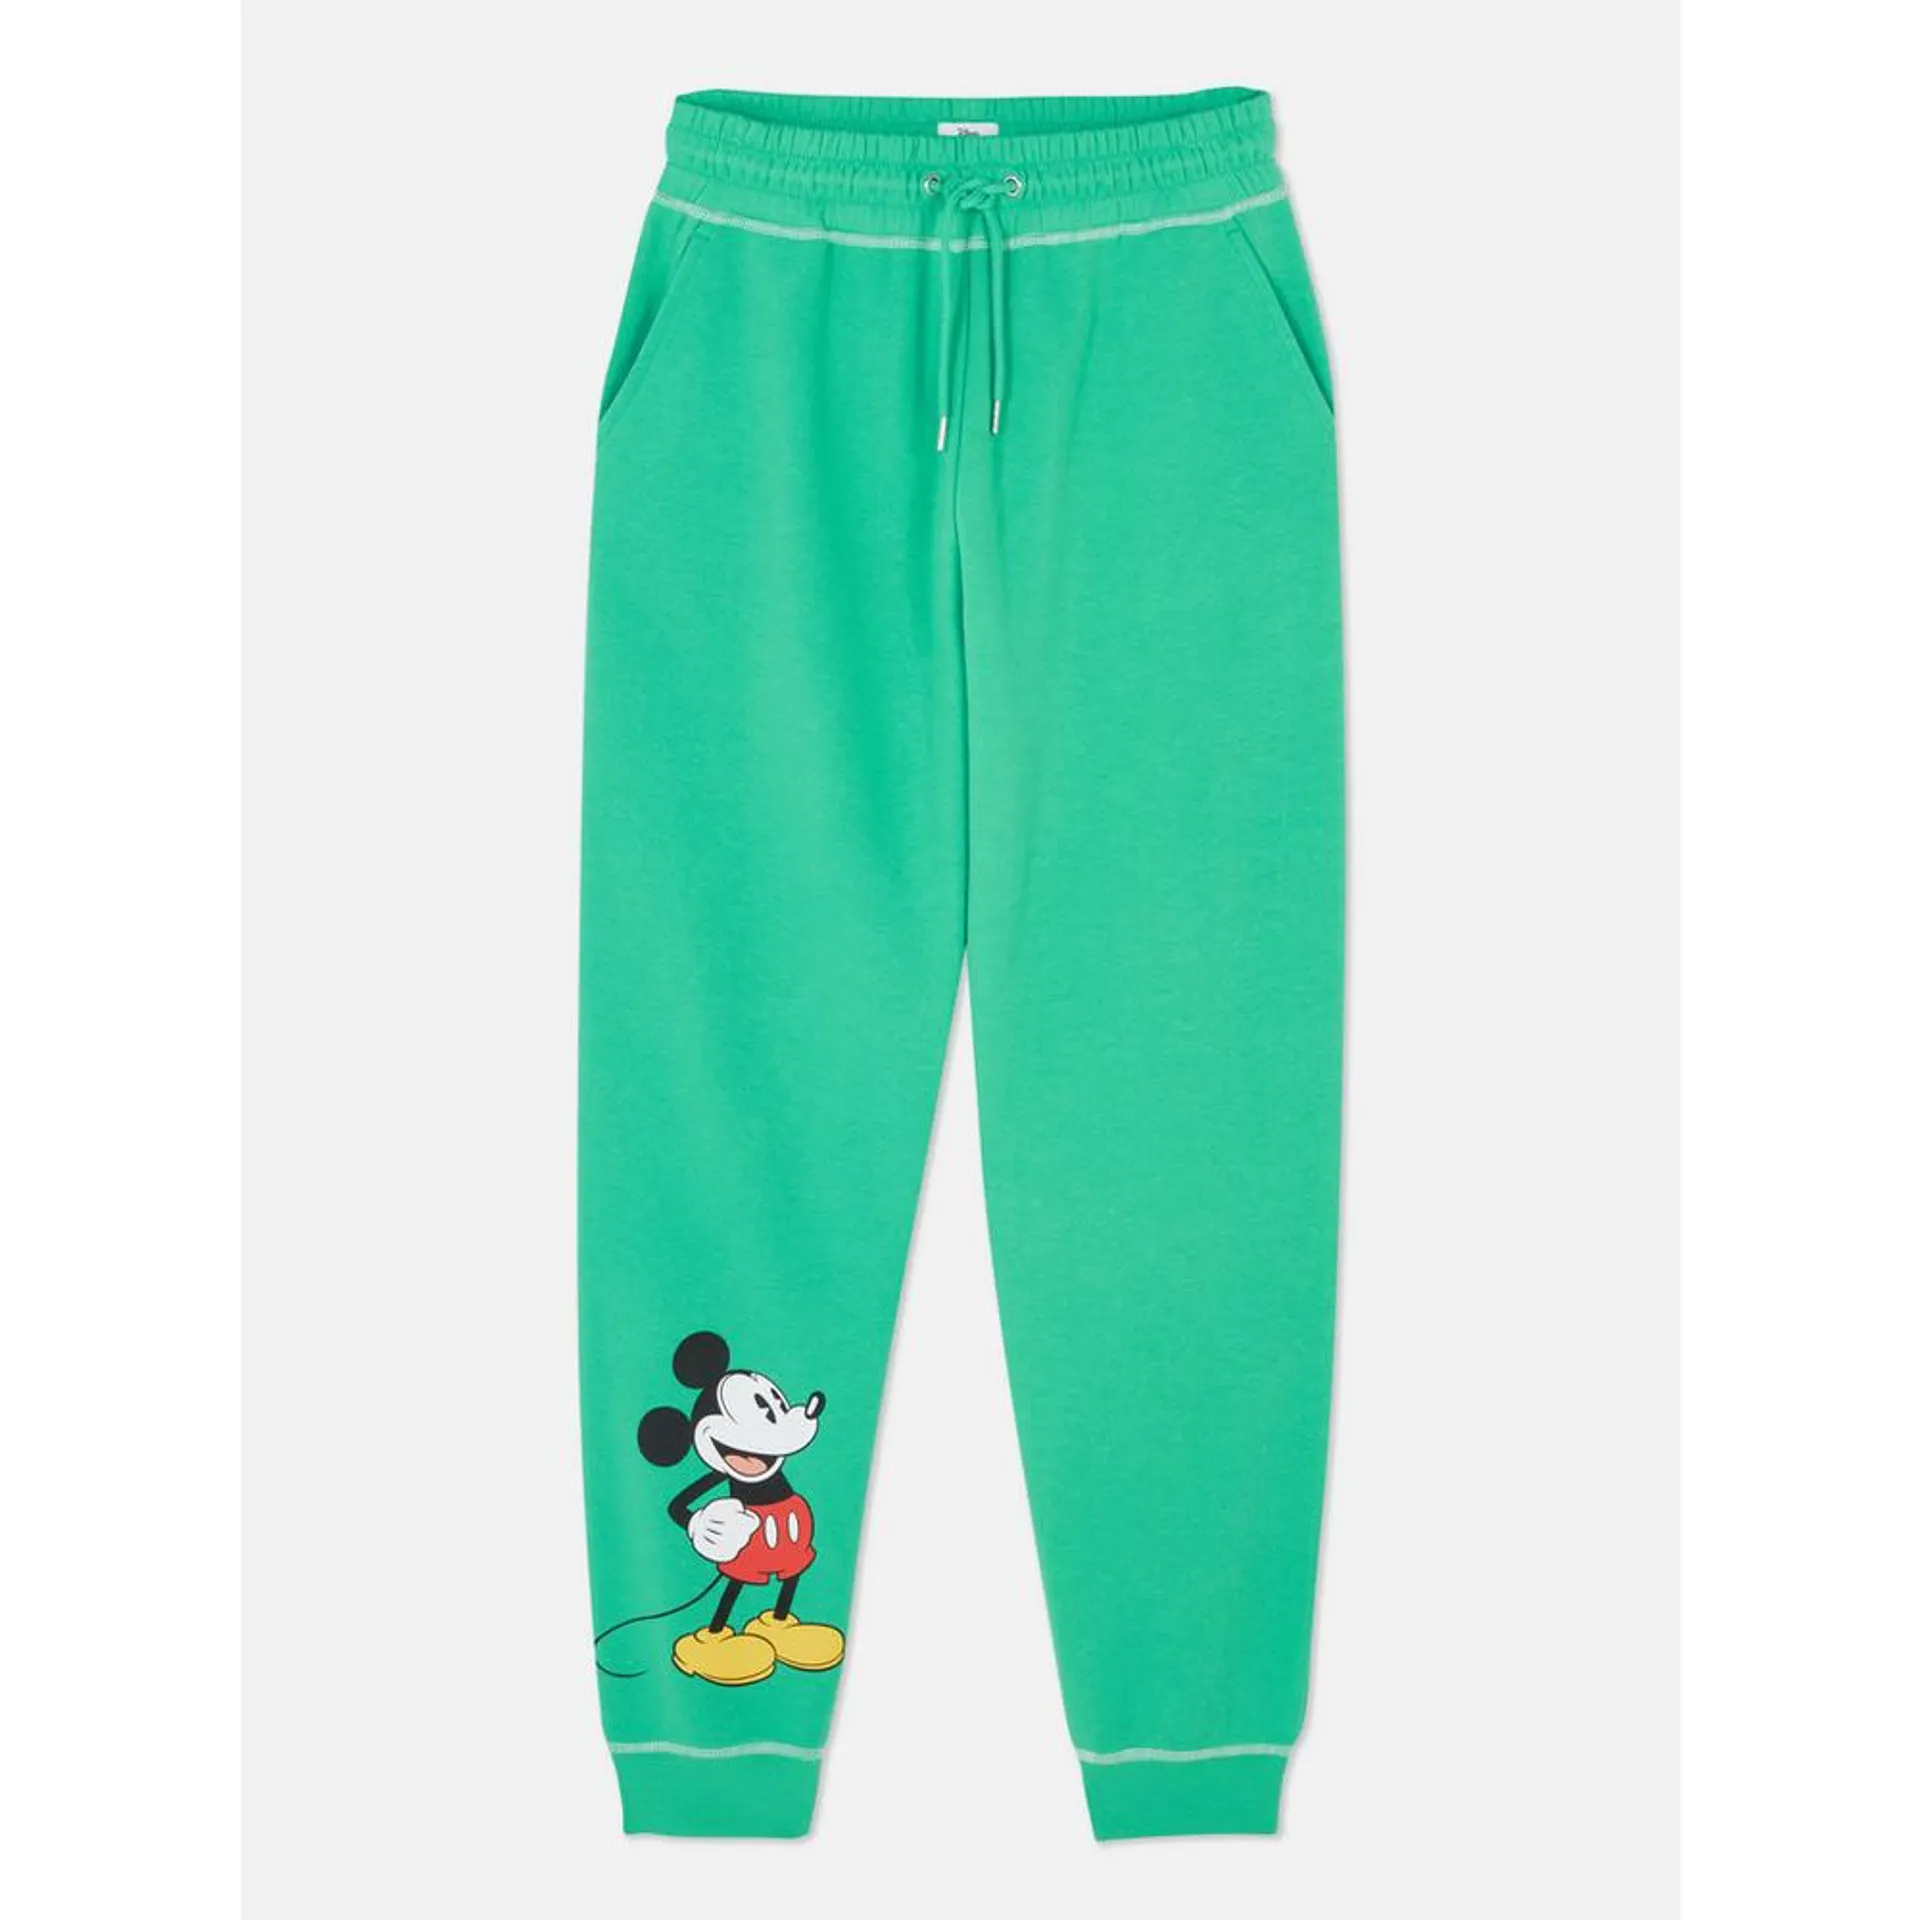 Pantalones de chándal con el personaje original de Mickey Mouse de Disney